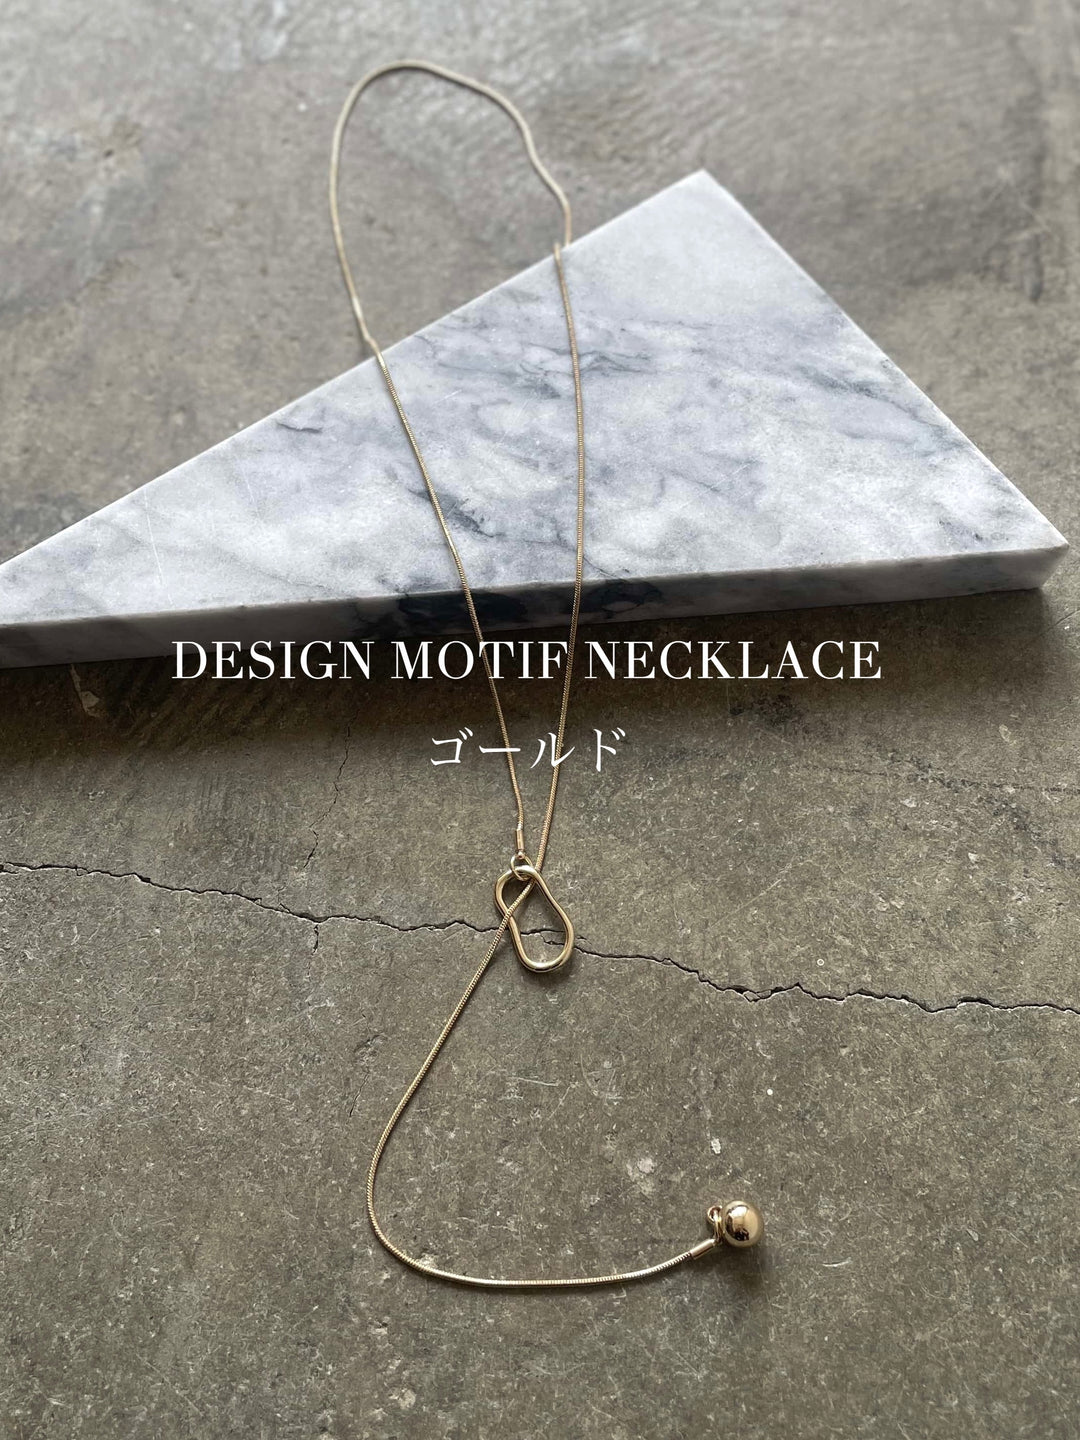 [SET] Back-open volume cami dress + selectable necklace set (2 sets)